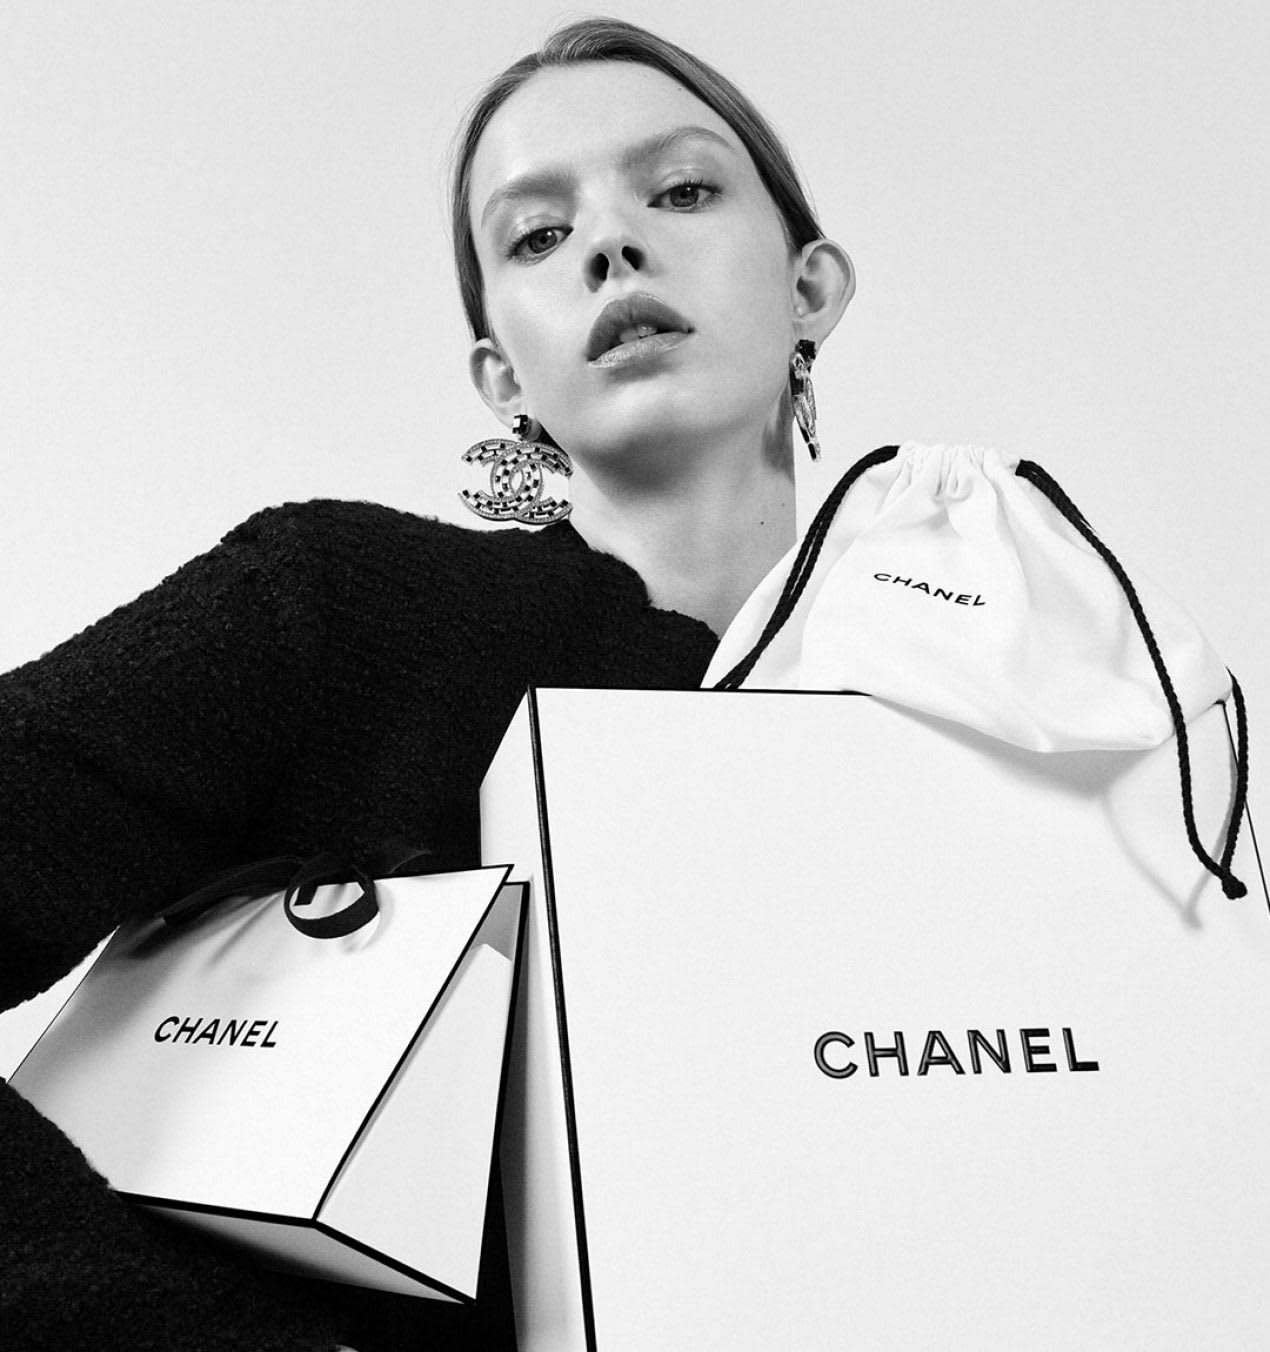 Nước Hoa CHANEL Comète Les Exclusifs De Chanel Eau de Parfum Spray